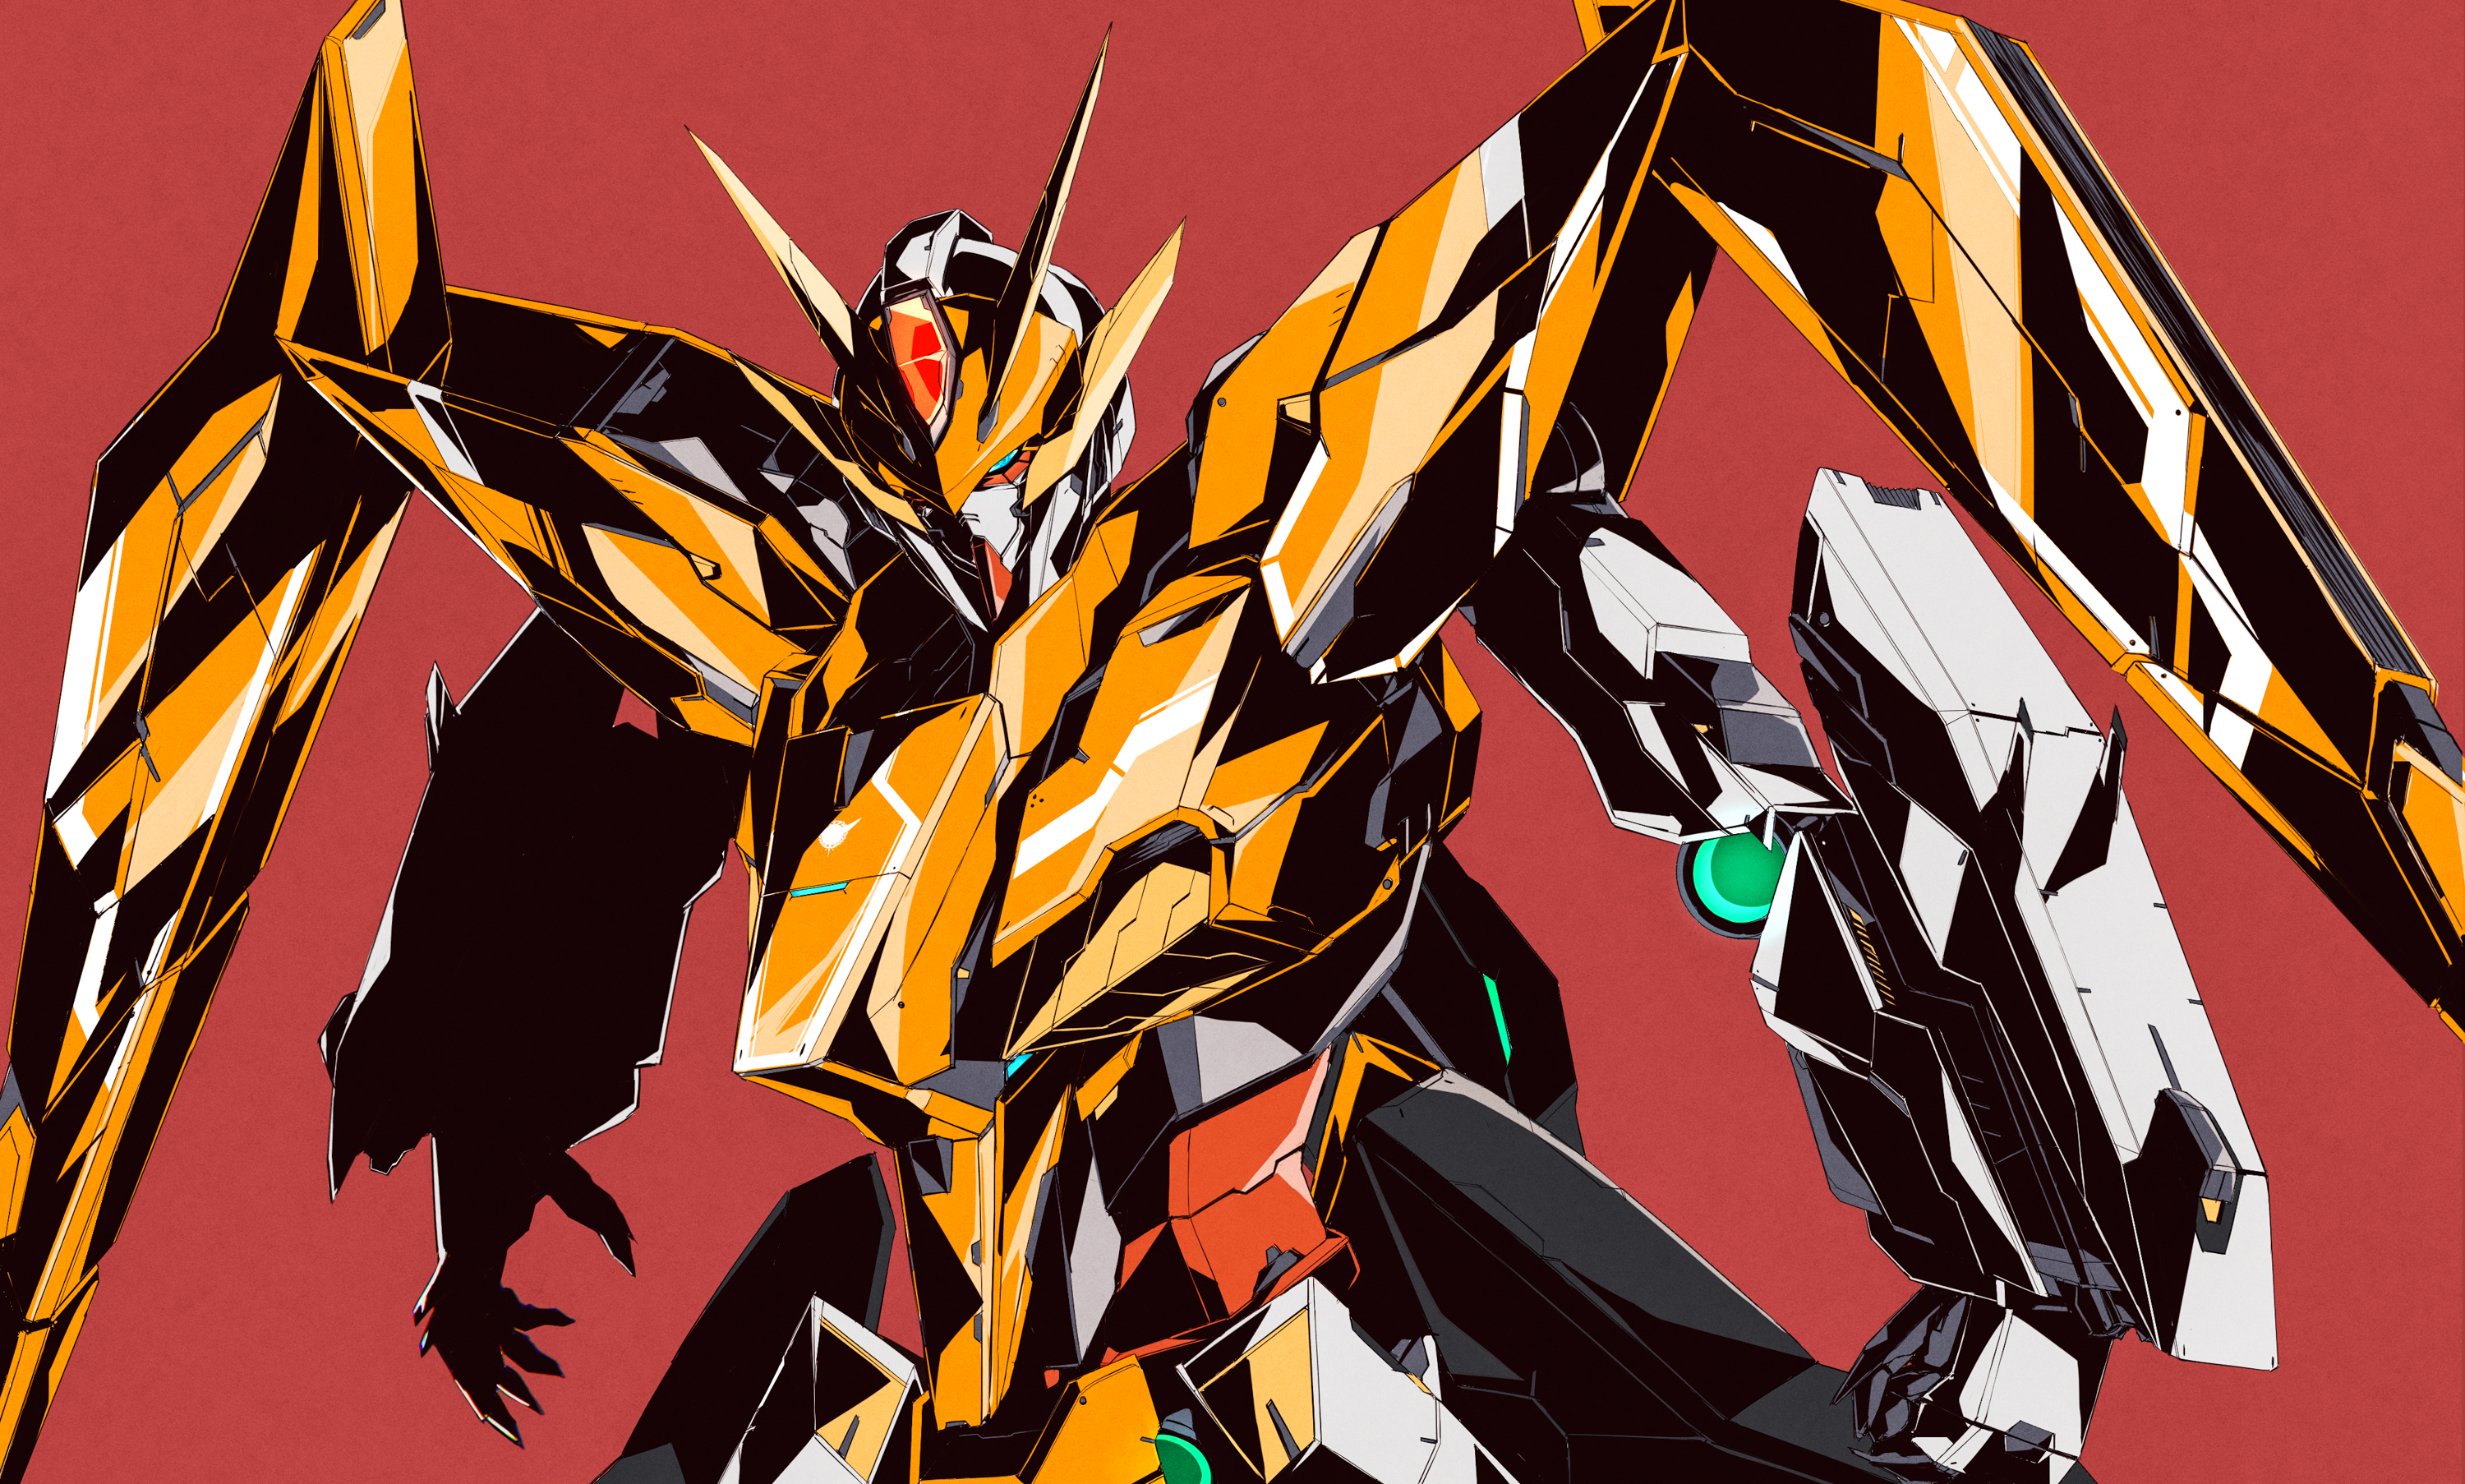 Arios Gundam Anime Mechs Gundam Super Robot Wars Mobile Suit Gundam 00 Artwork Digital Art Fan Art 3000x1806